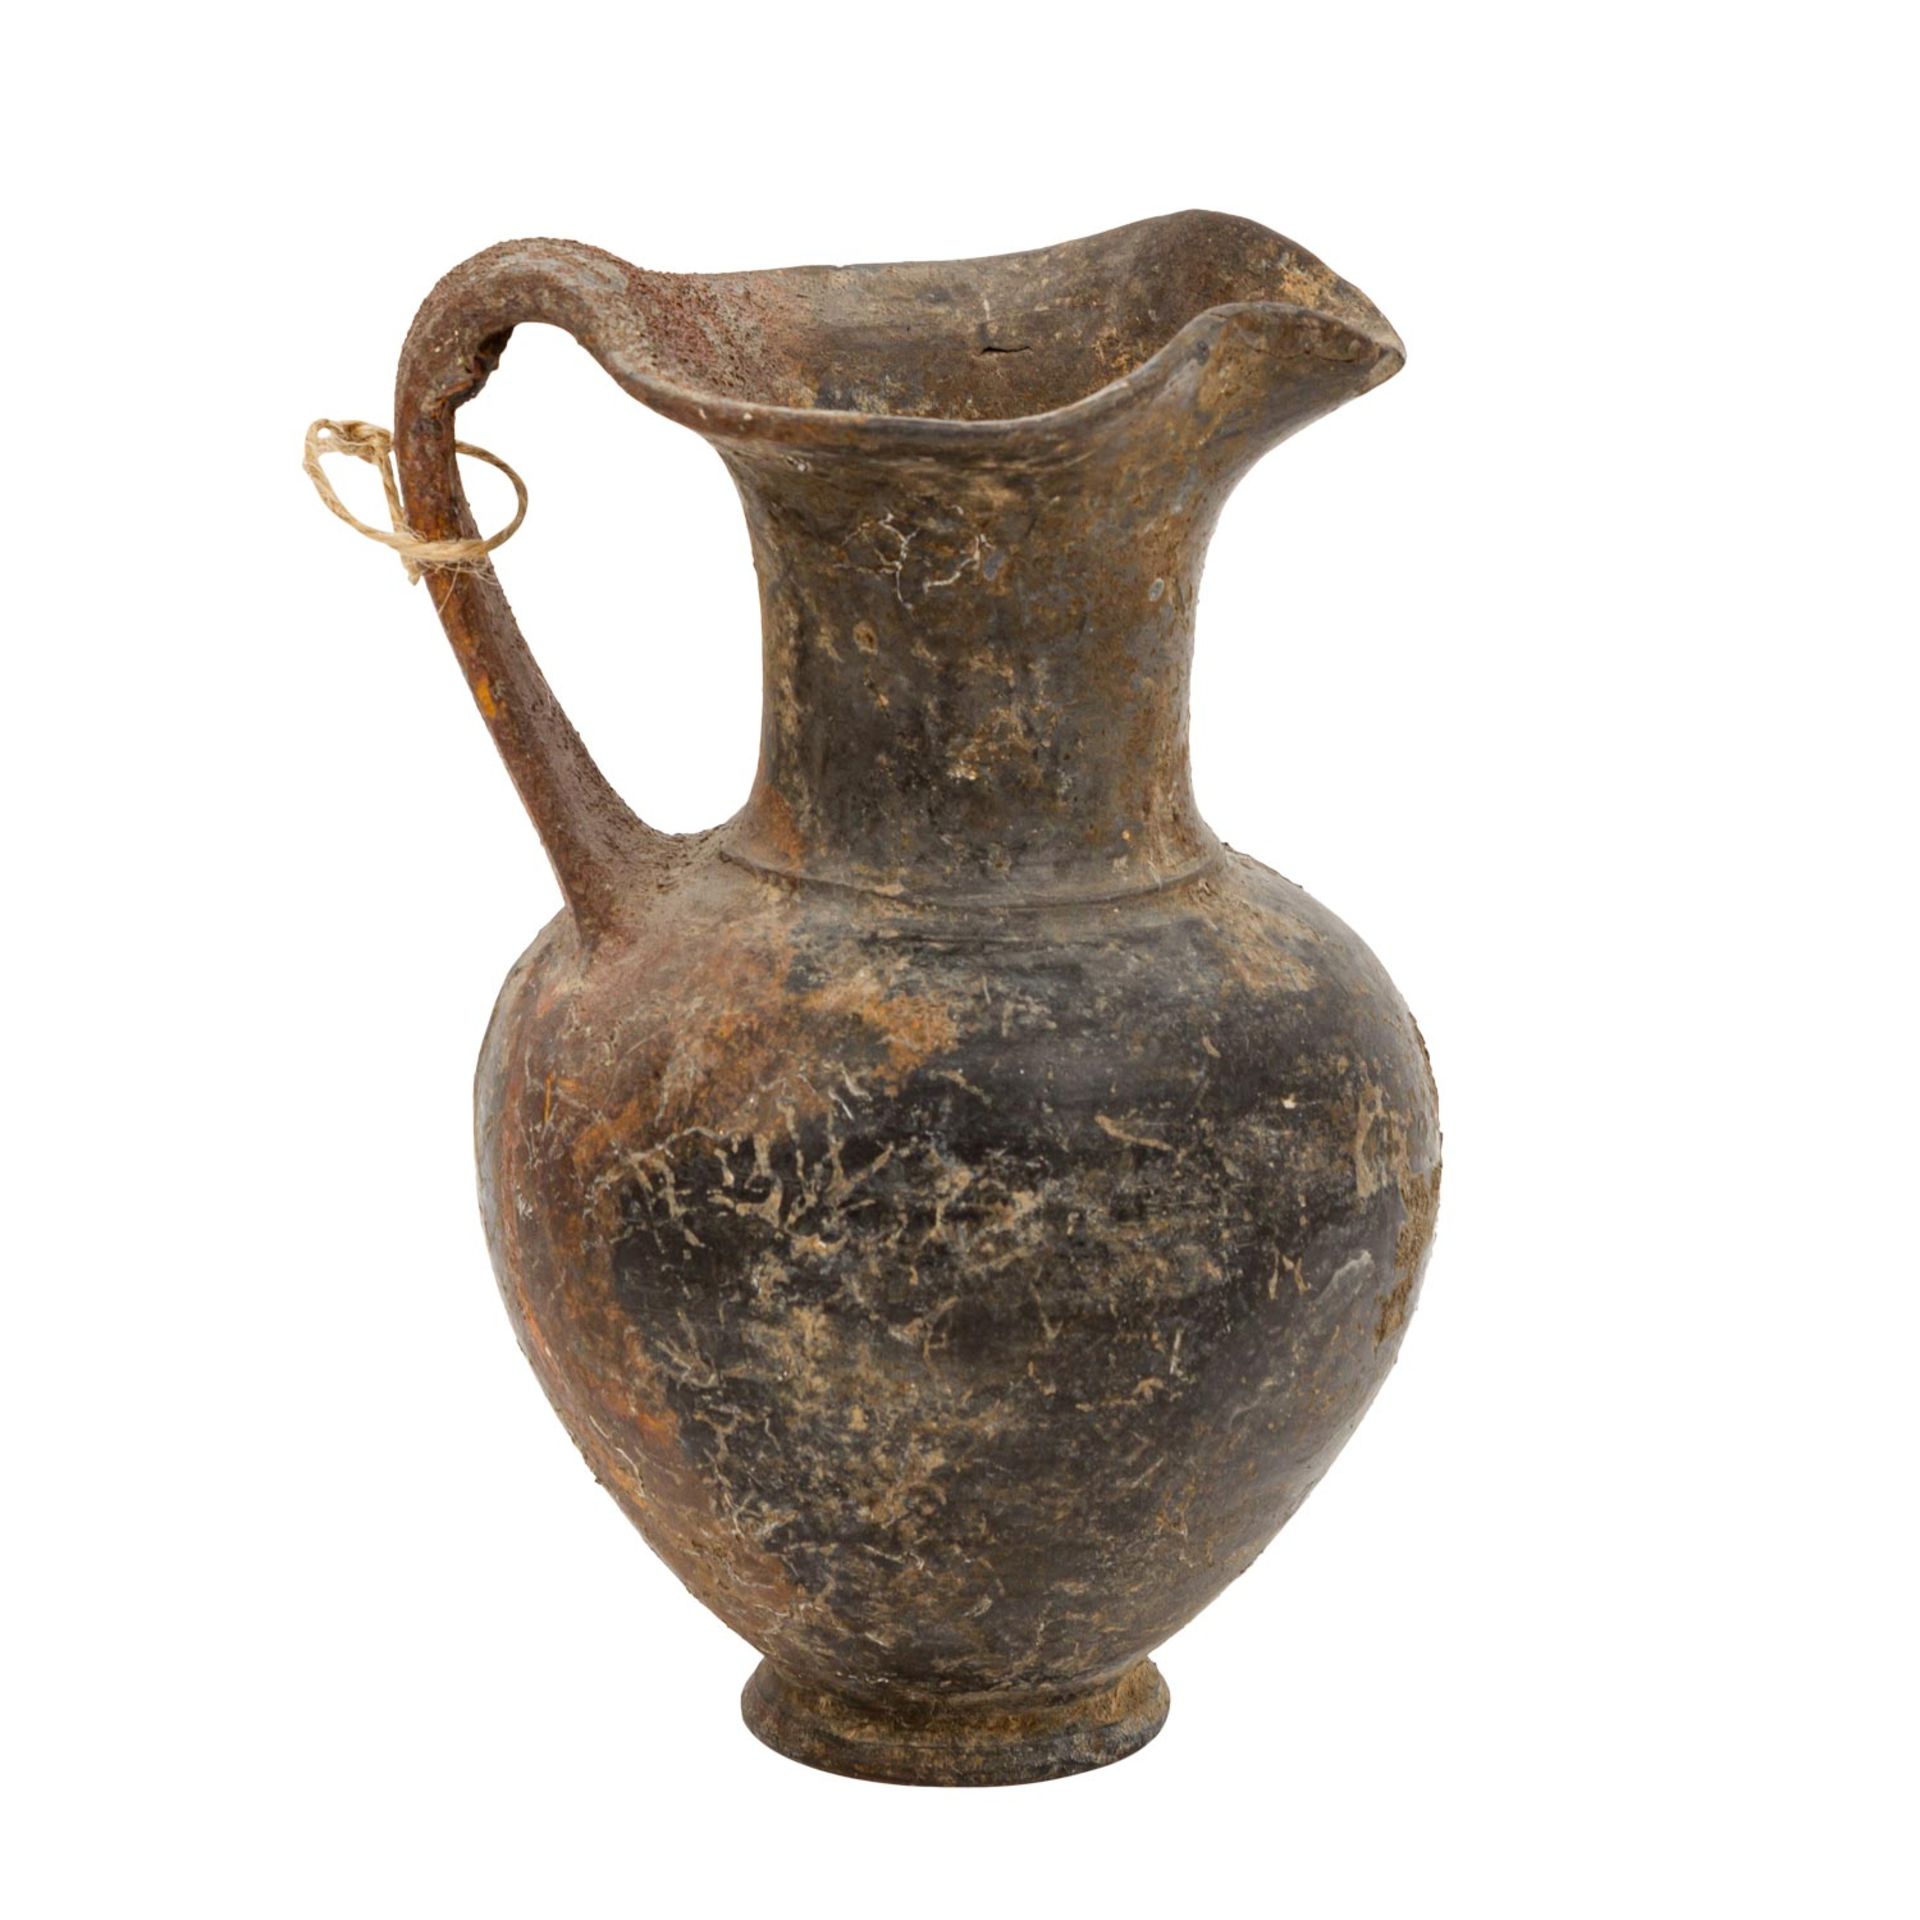 Antike Keramik aus Etrurien - einhenklige Kanne aus Buccherokeramik mit kleeblattförm - Image 3 of 6